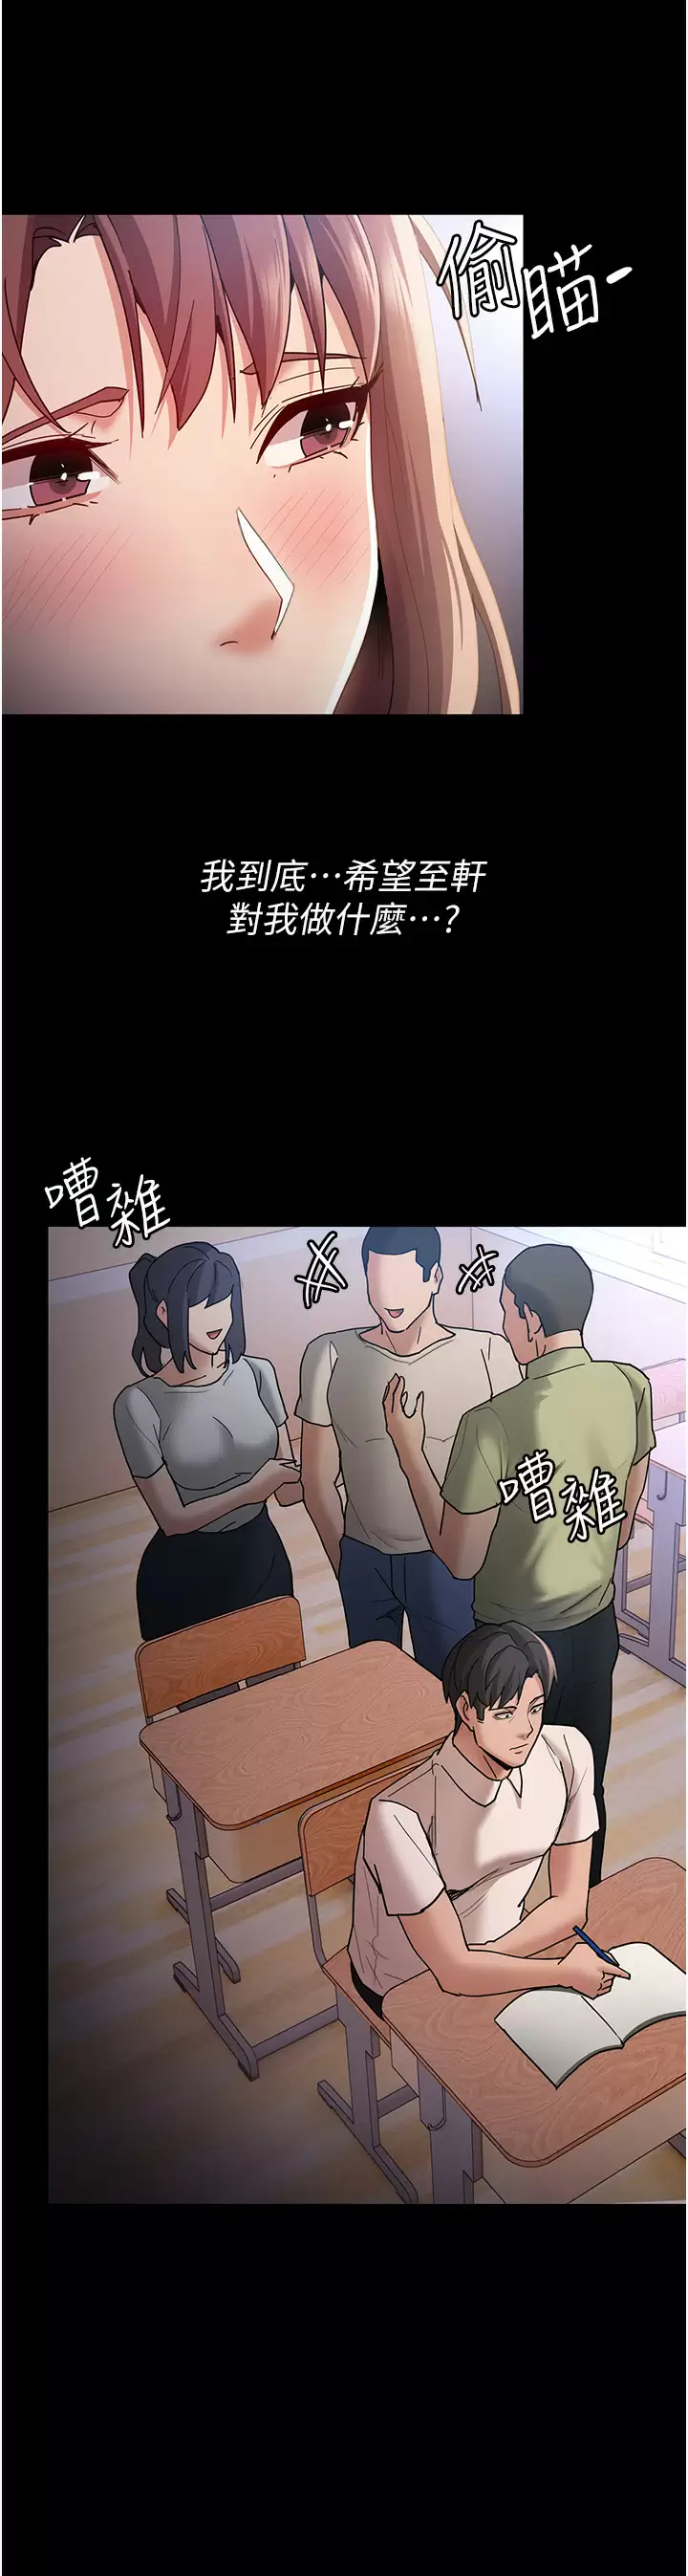 韩国污漫画 癡漢成癮 第13话 自投罗网的猎物 24